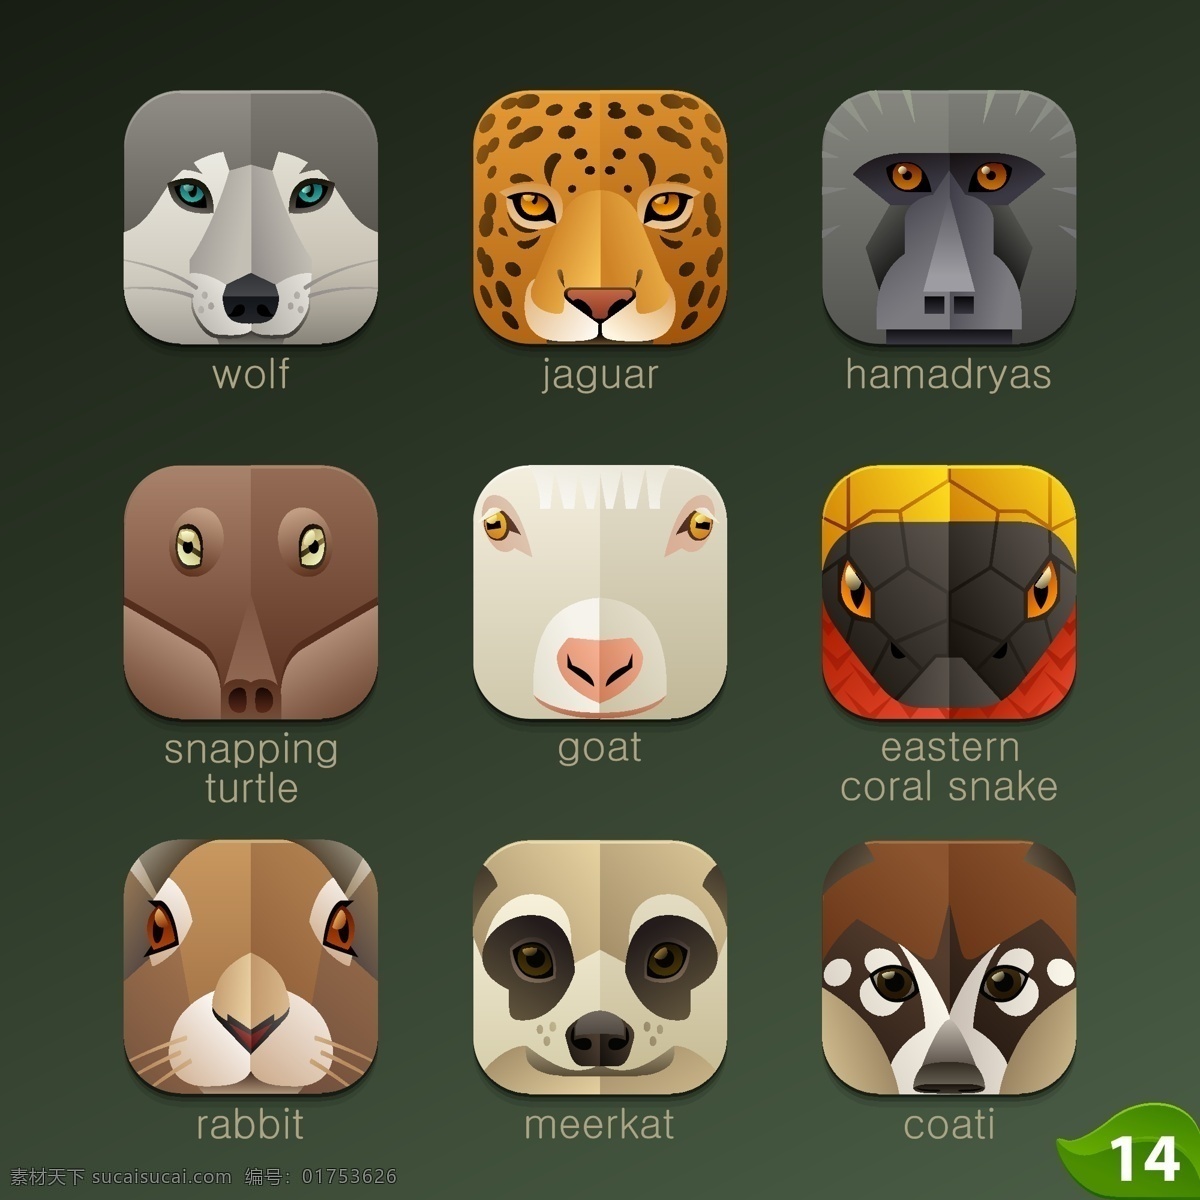 动物 头像 图标 矢量图 豹子 狼 山羊 手绘 兔子 啮龟 狒狒 猫鼬 长鼻浣熊 手机 app app图标